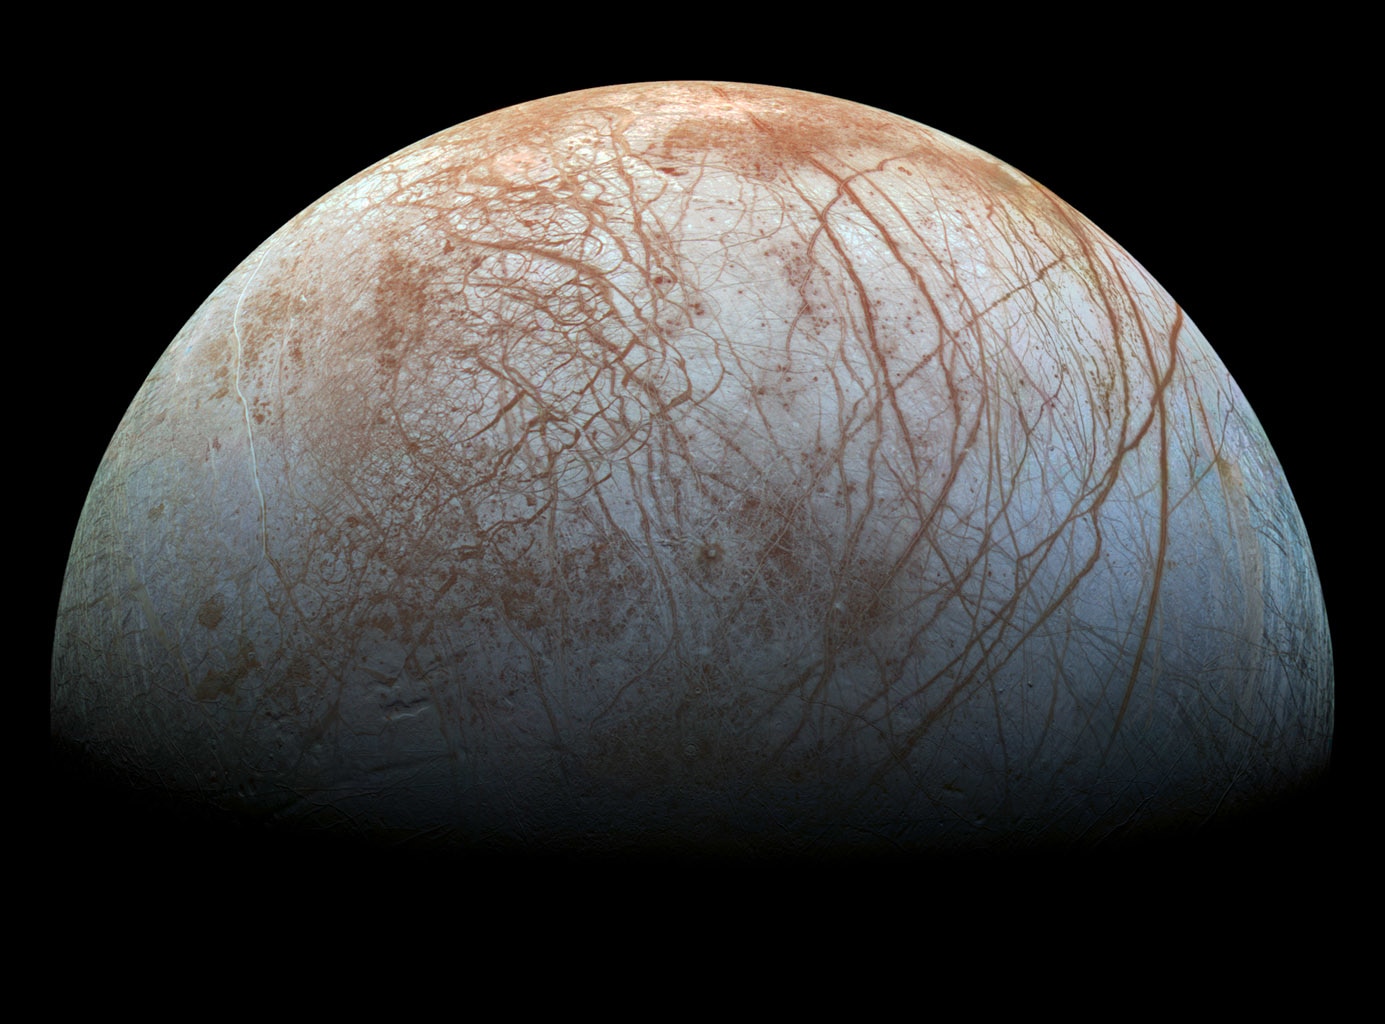 A Jupiter Európé holdja a Galileo-űrszonda által készített felvételen. Forrás: NASA/JPL